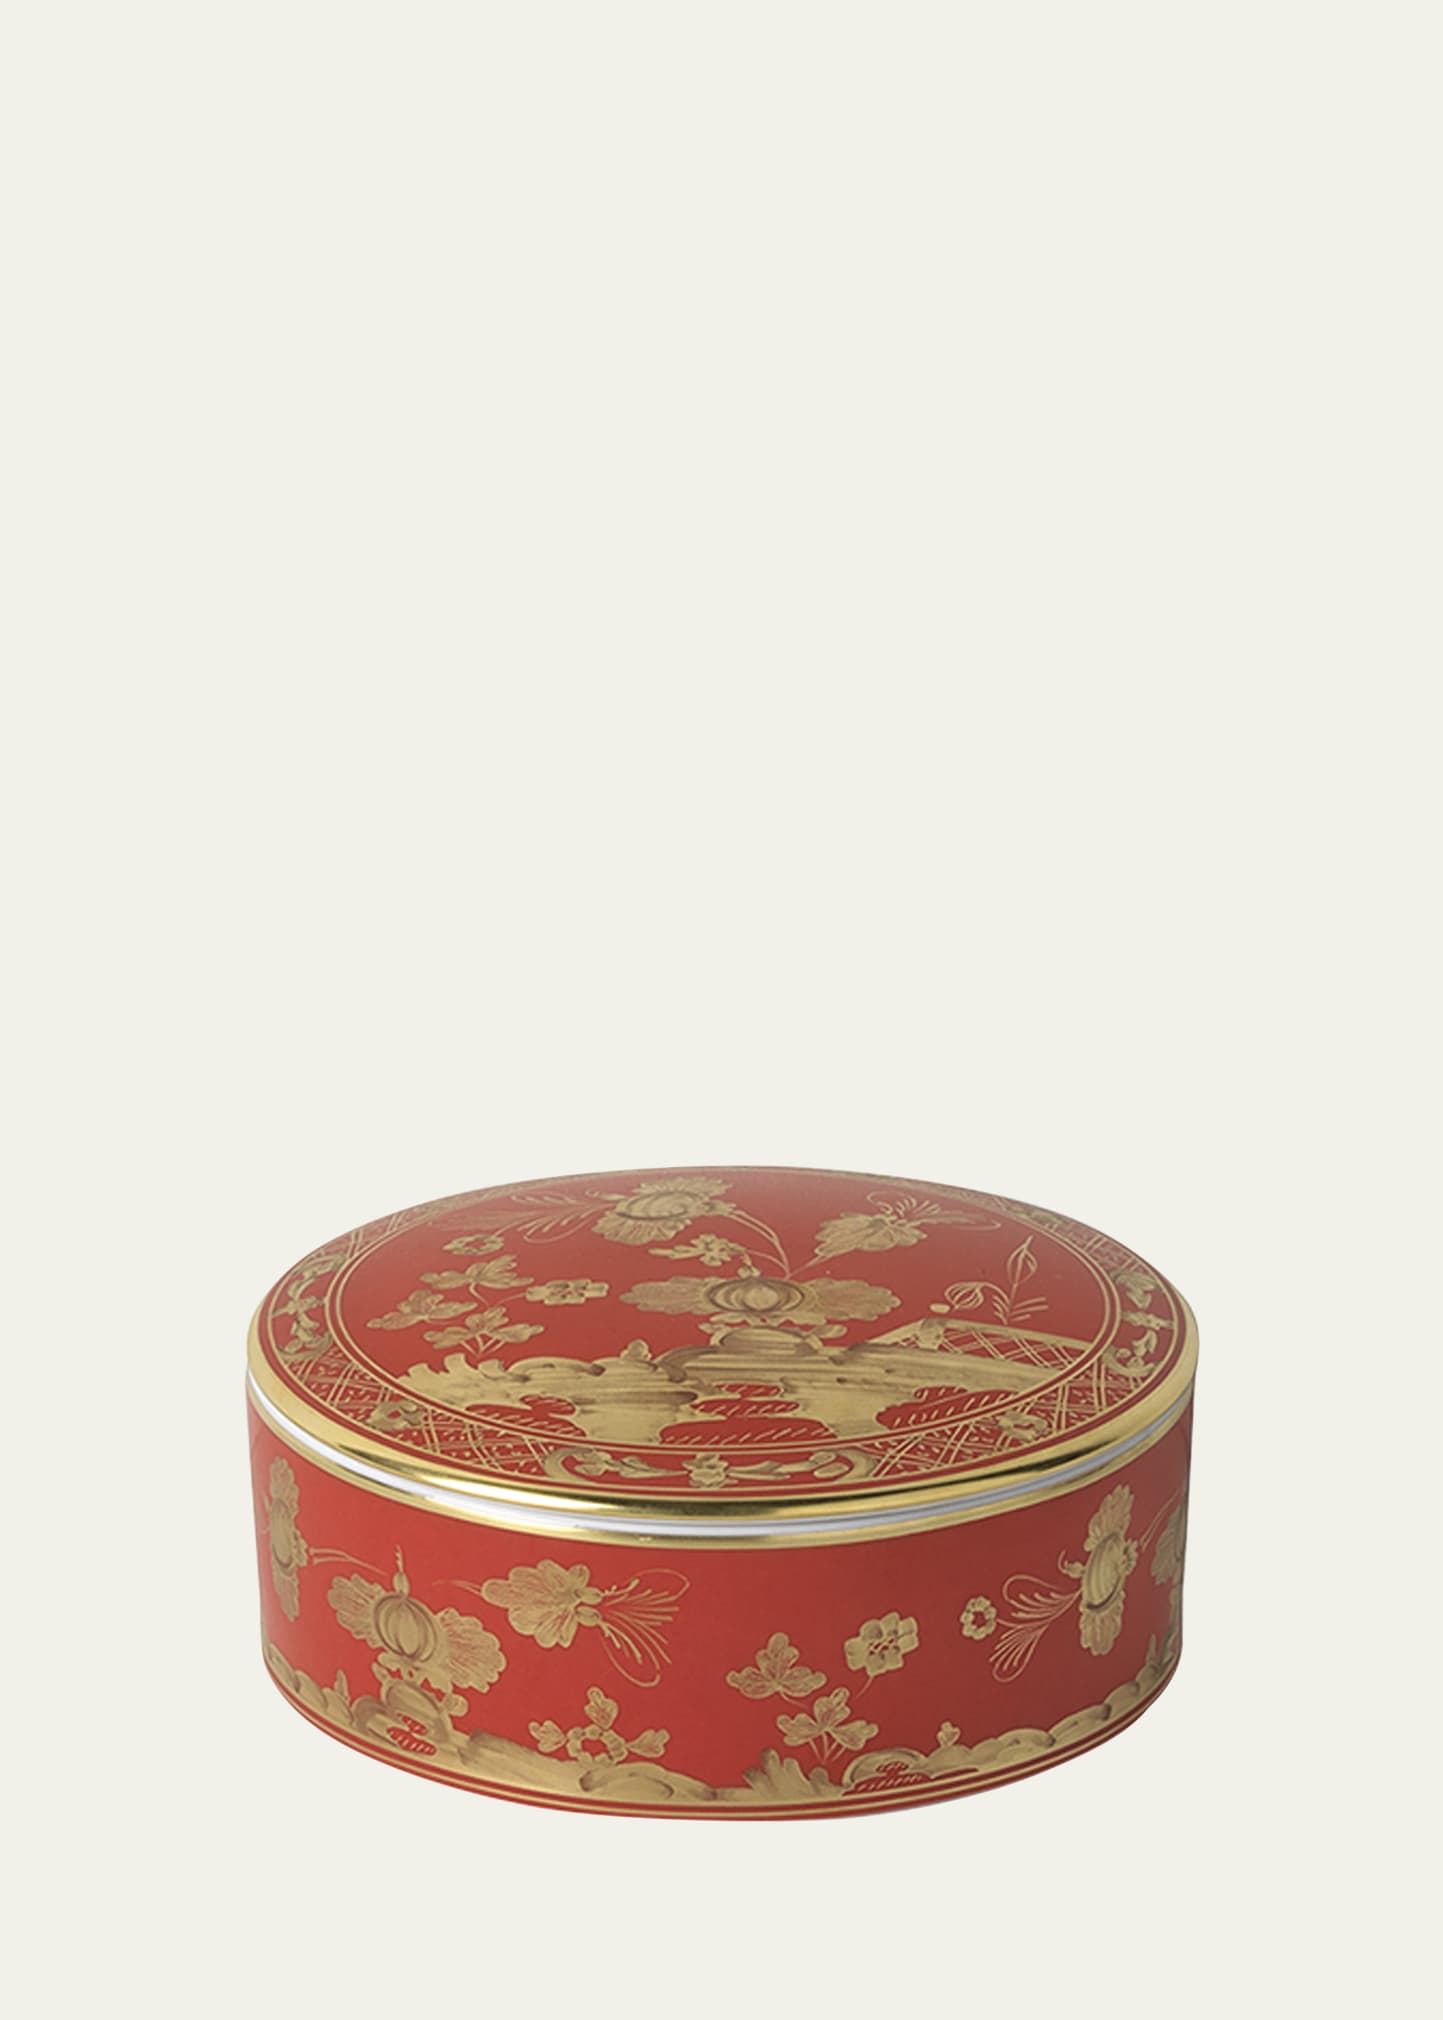 Ginori 1735 Red Oriente Italiano Round Trinket Box